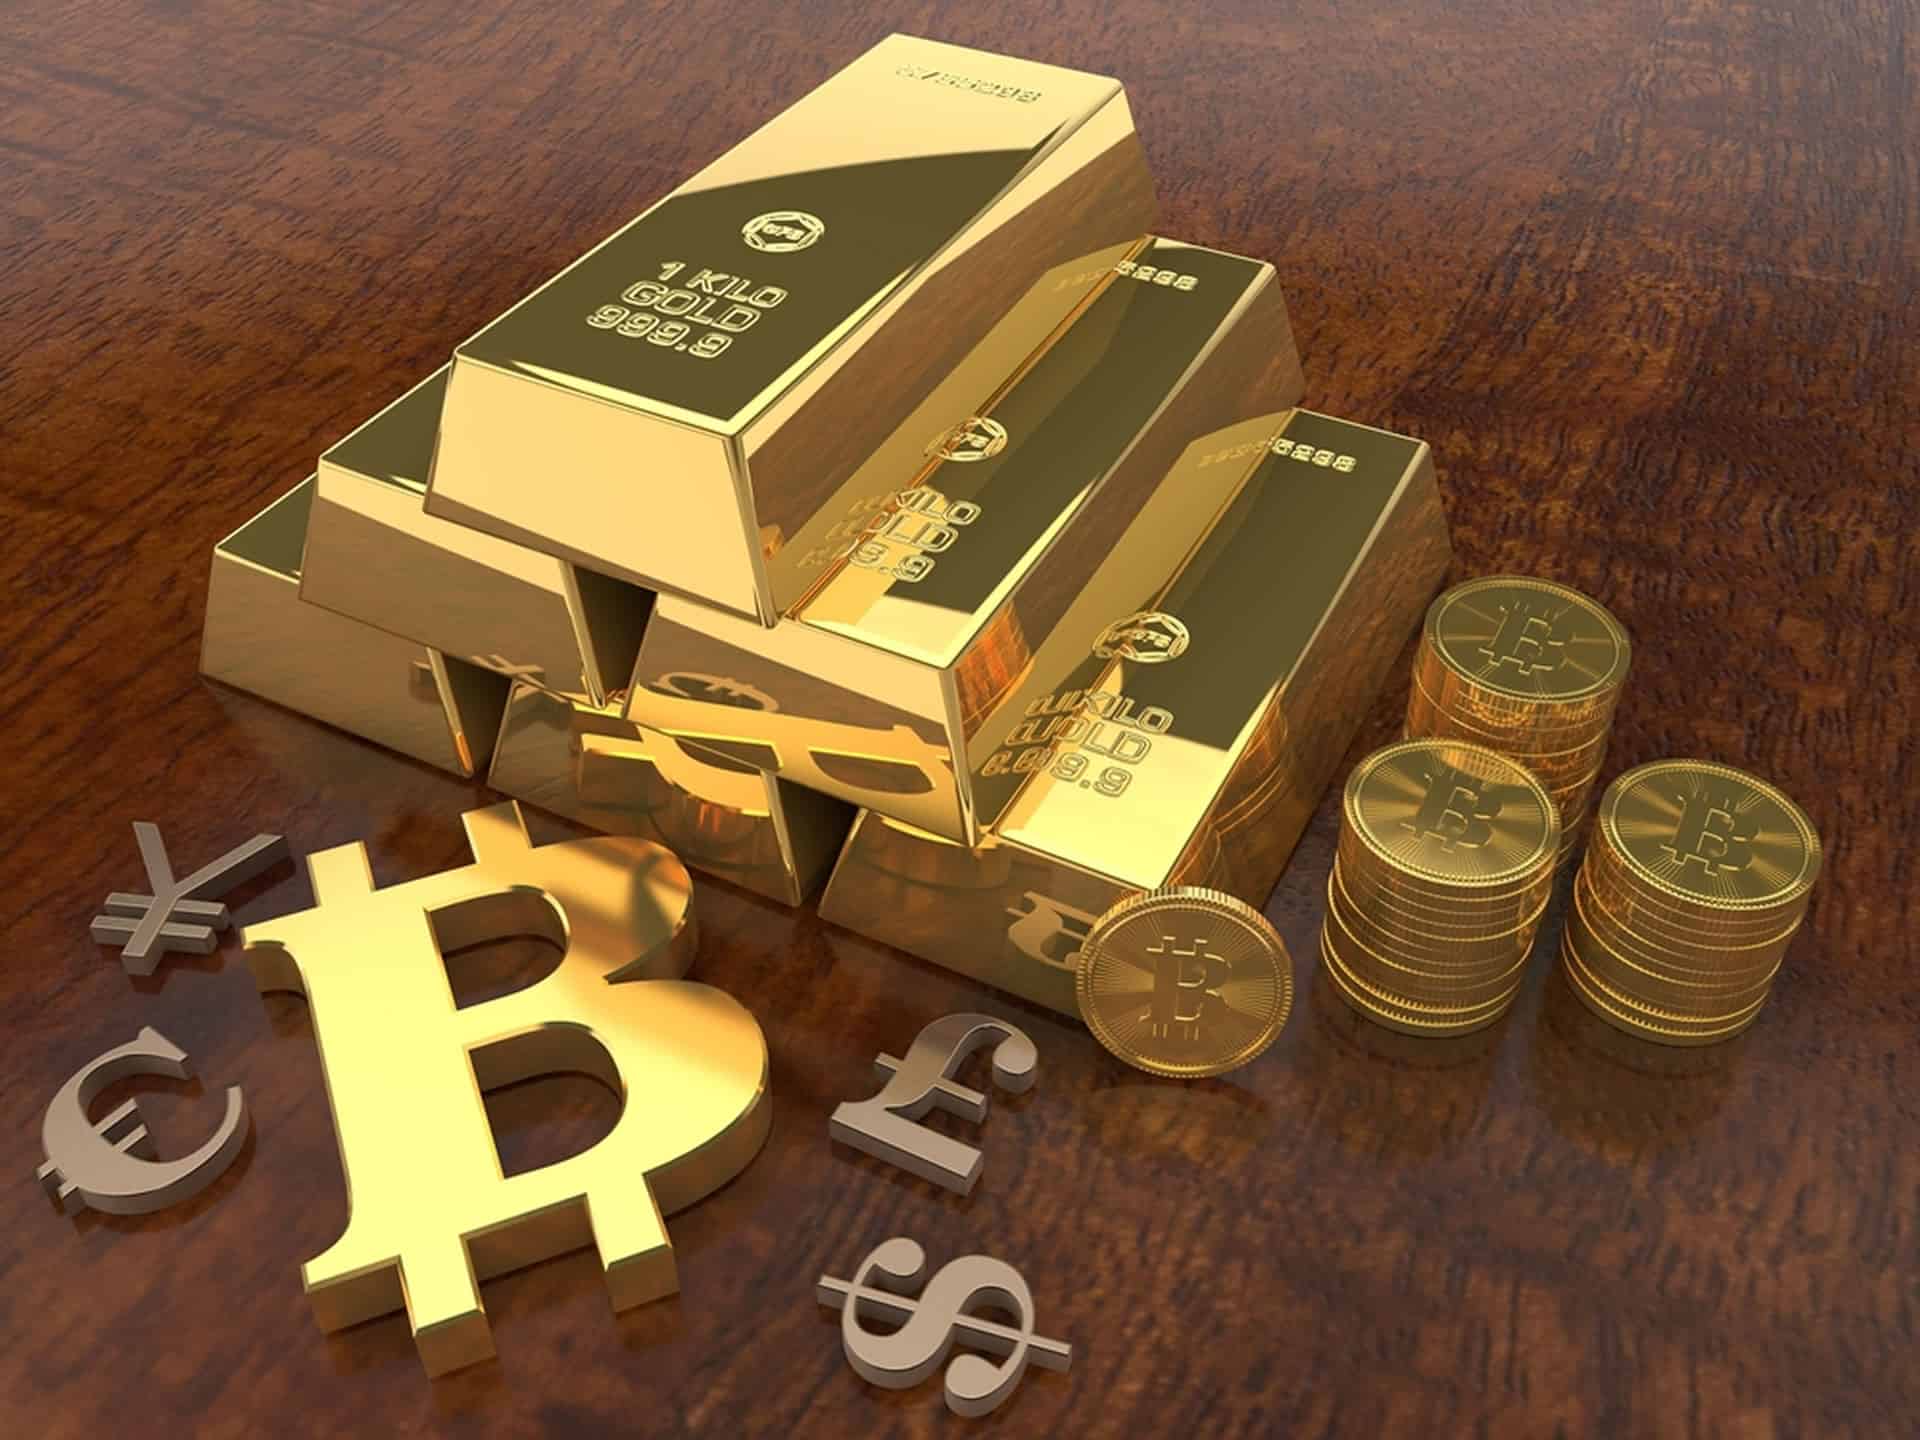 Barrick Gold CEO glaubt, dass Kryptowährungen leicht erstellt werden können, Gold jedoch nicht